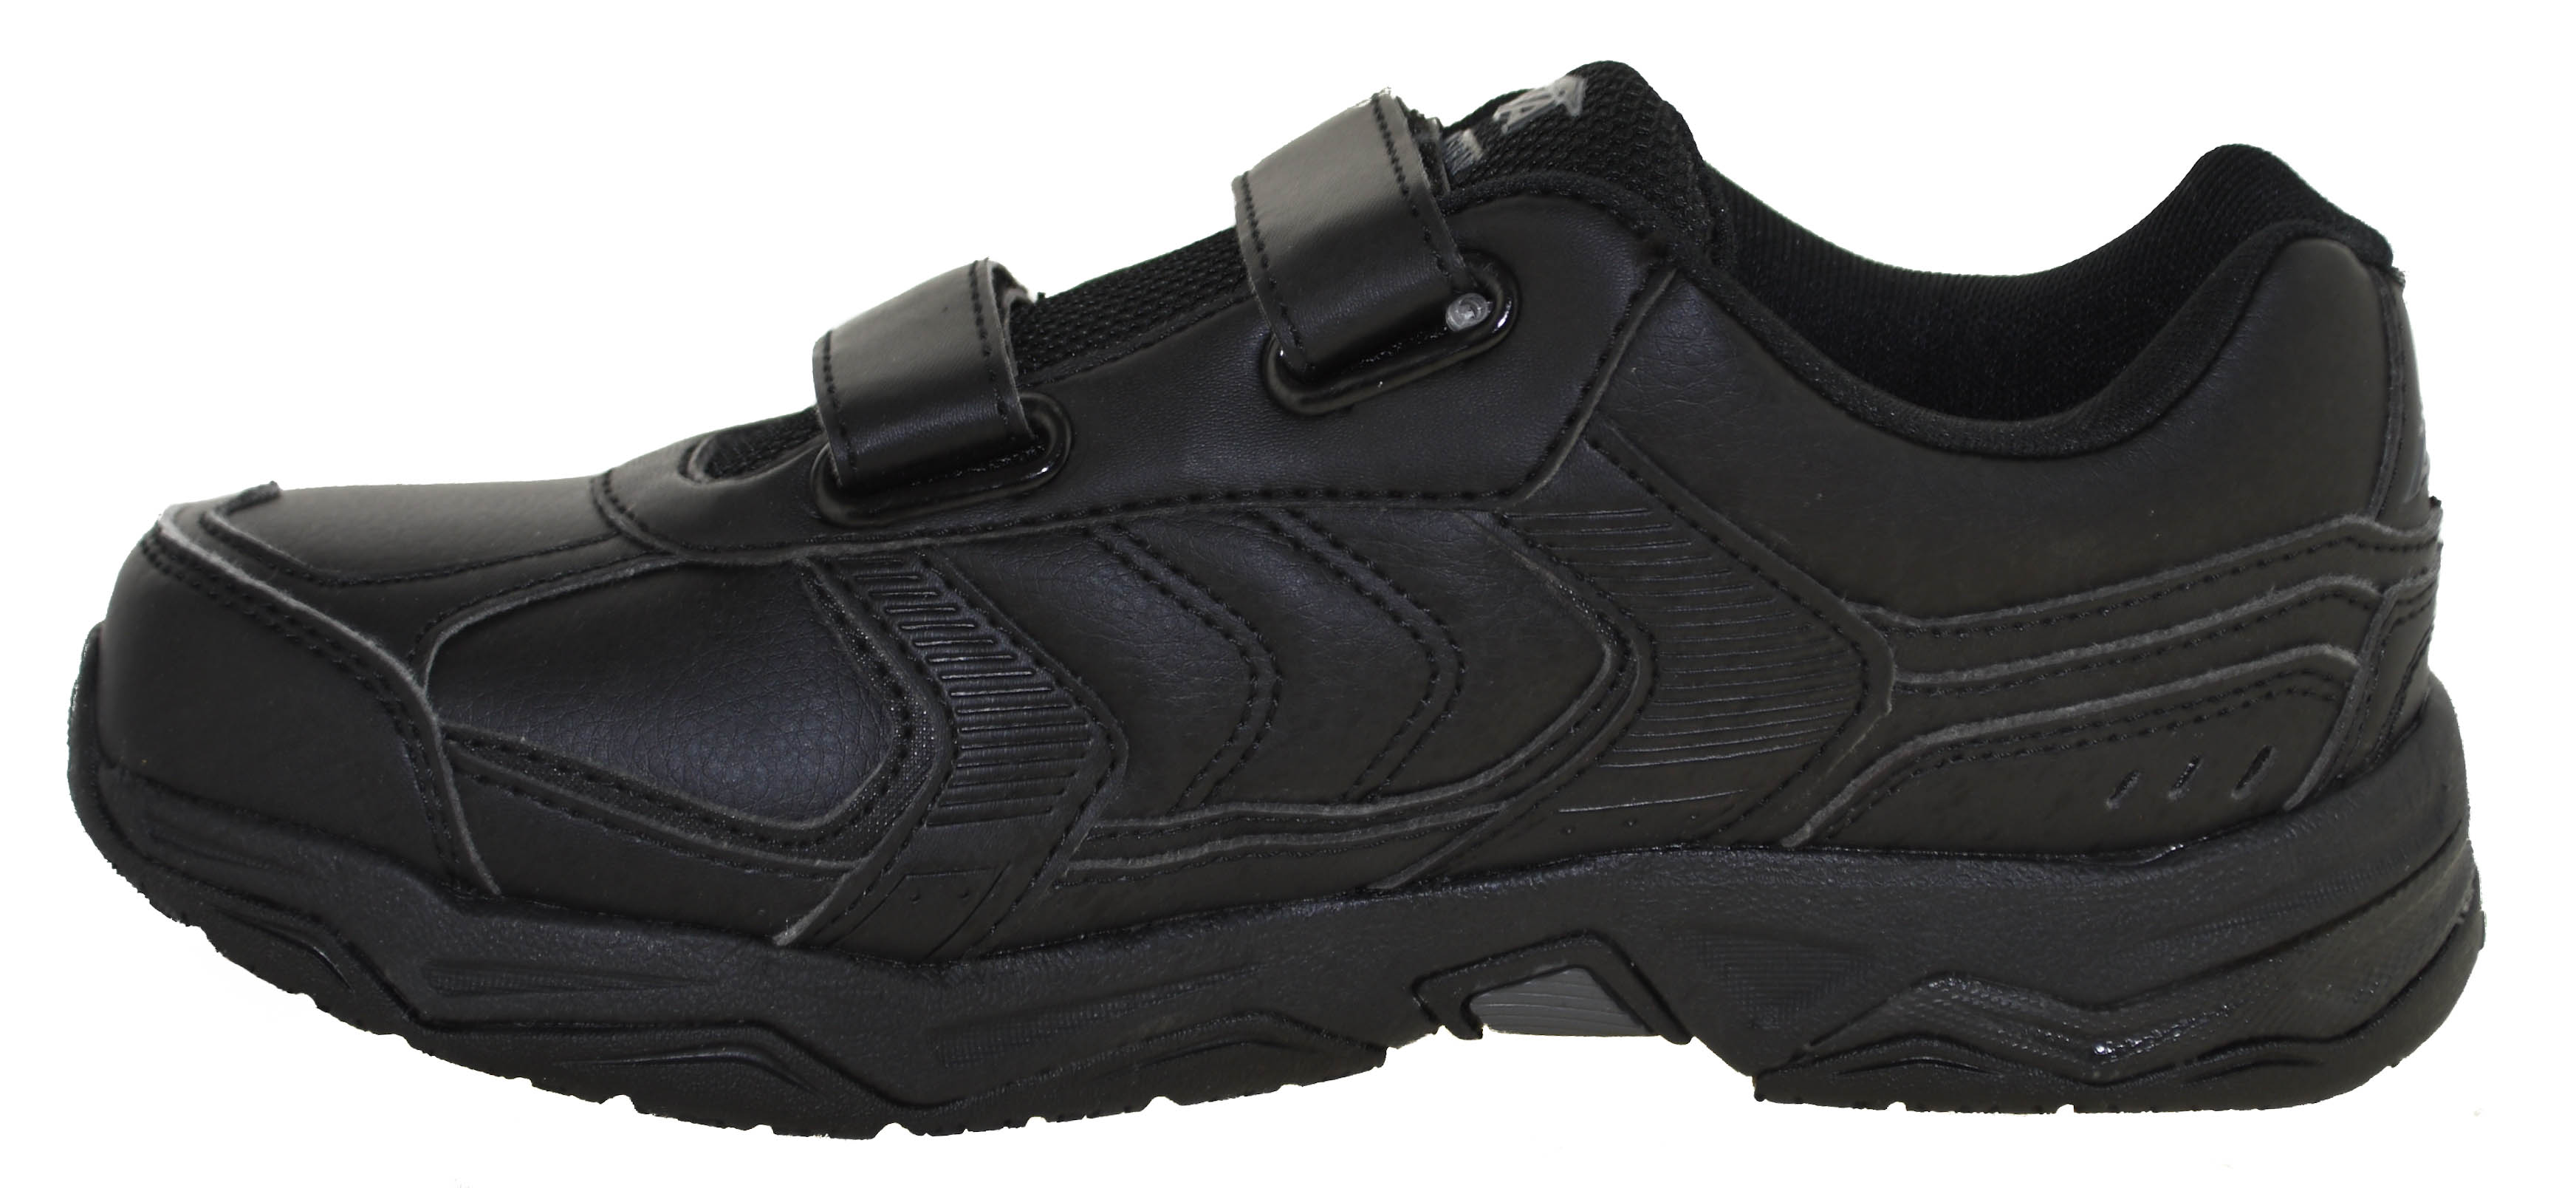 Avia Men's Avi-Union Strap Service Shoes Black Style A1442 | eBay